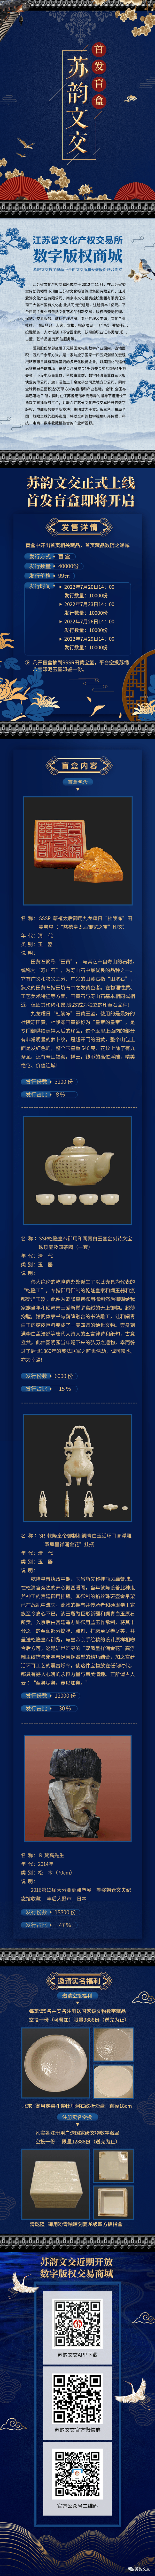 江苏省文交所和爱聚星数字版权商城首发盲盒即将开售-汽车热线网